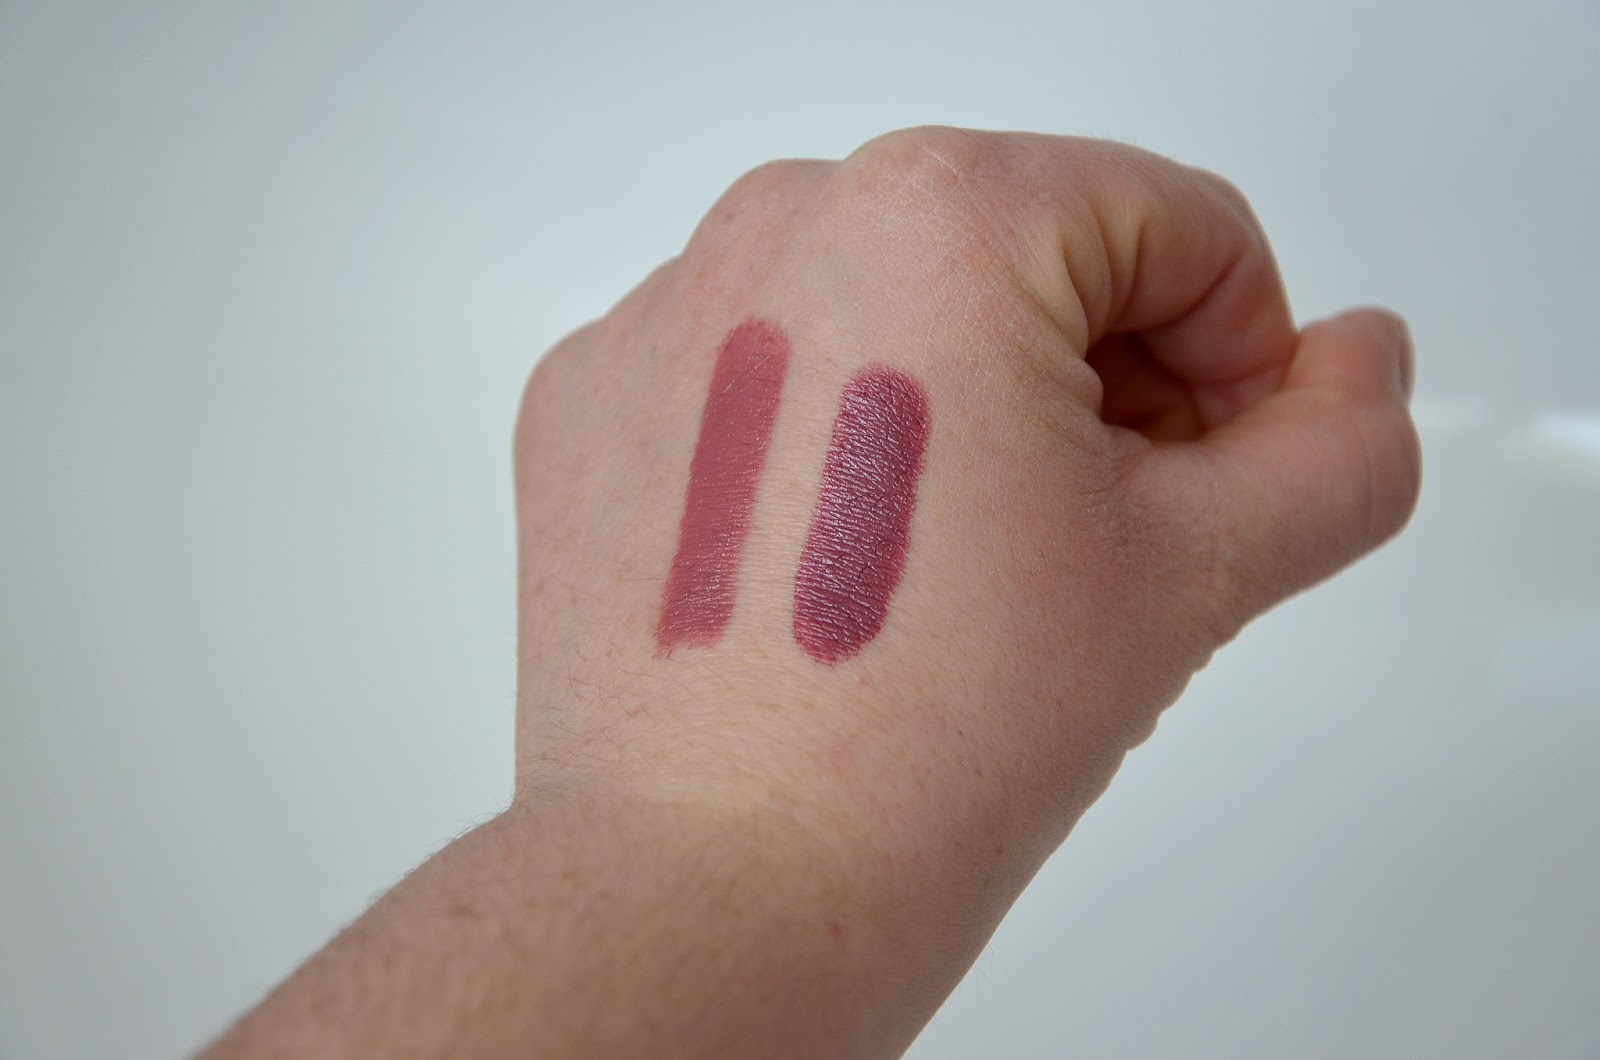 more natural colour lipstick 06 freedom mauve spring 2.0 kiko vs 13 unlimited stylo